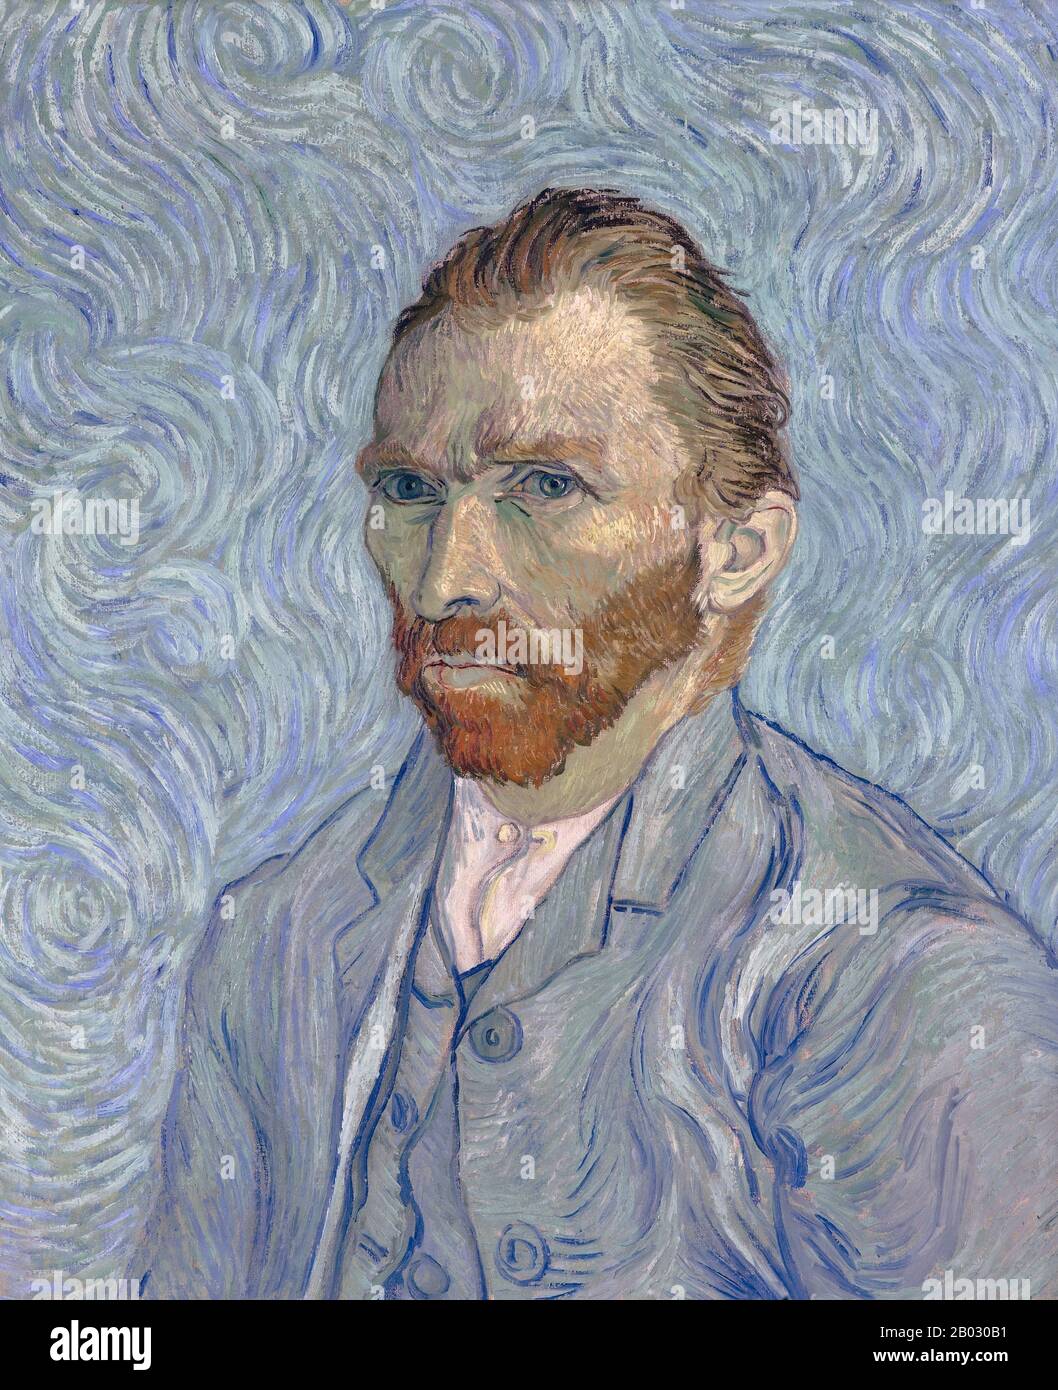 Center Vincent Willem van Gogh Vincent Willem van Gogh (Parigi, 30 marzo 1853 – 29 luglio 1890) è stato un . Fu un artista olandese la cui opera ebbe un'influenza di vasta portata sull'arte del 20th secolo. La sua produzione include ritratti, autoritratti, paesaggi e ancora lifes di cipressi, campi di grano e girasoli. Disegnò come bambino, ma non dipinse fino agli ultimi vent'anni; completò molte delle sue opere più conosciute durante gli ultimi due anni della sua vita. In poco più di un decennio, ha prodotto più di 2.100 opere d'arte, tra cui 860 dipinti ad olio e più di 1.300 acquerelli, disegni, schizzi e stampe. Questo dipinto Foto Stock